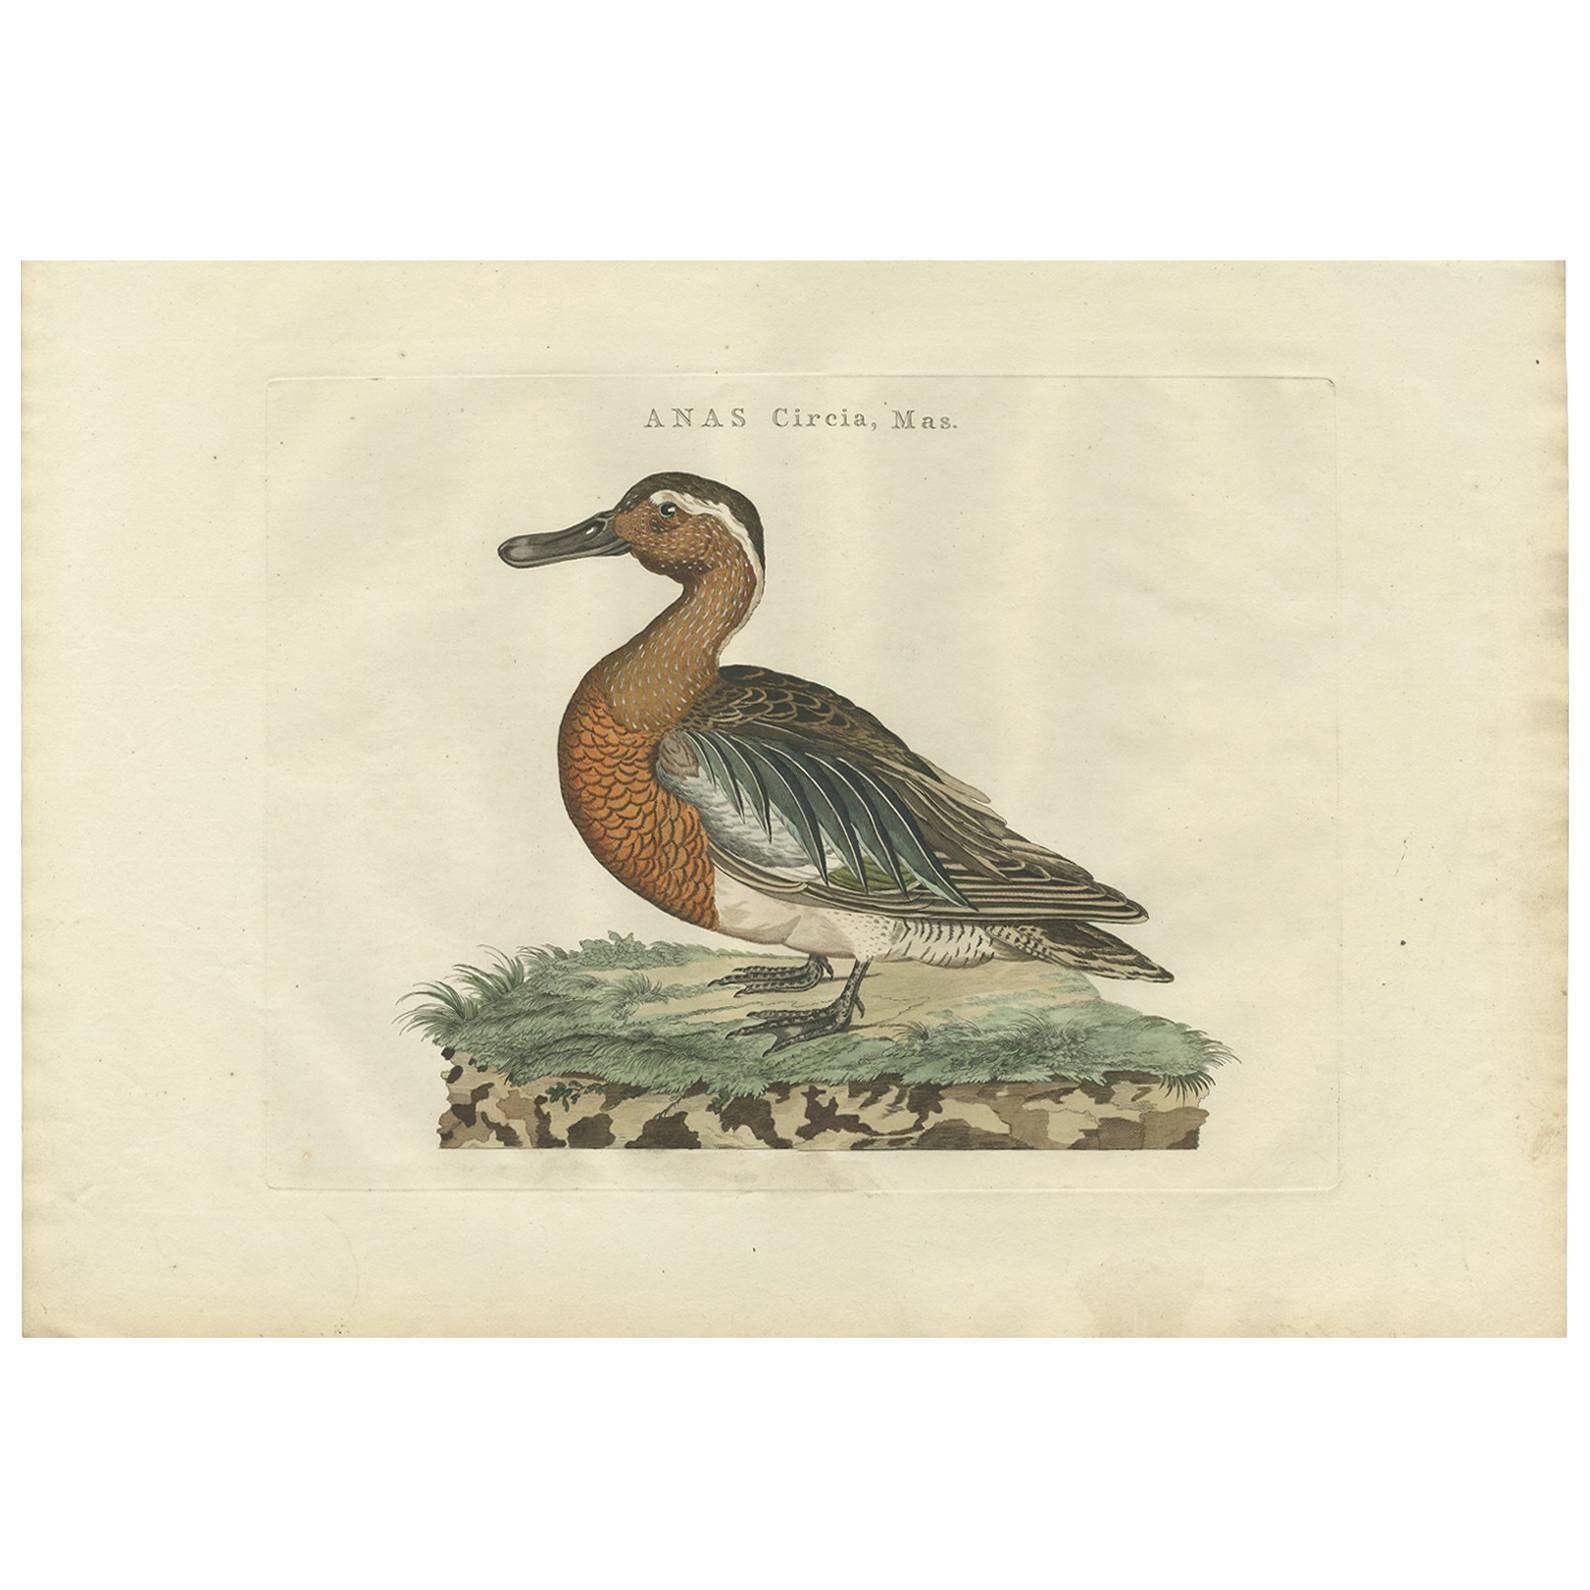 Antique Bird Print of a Garganey Duck by Sepp & Nozeman, 1789